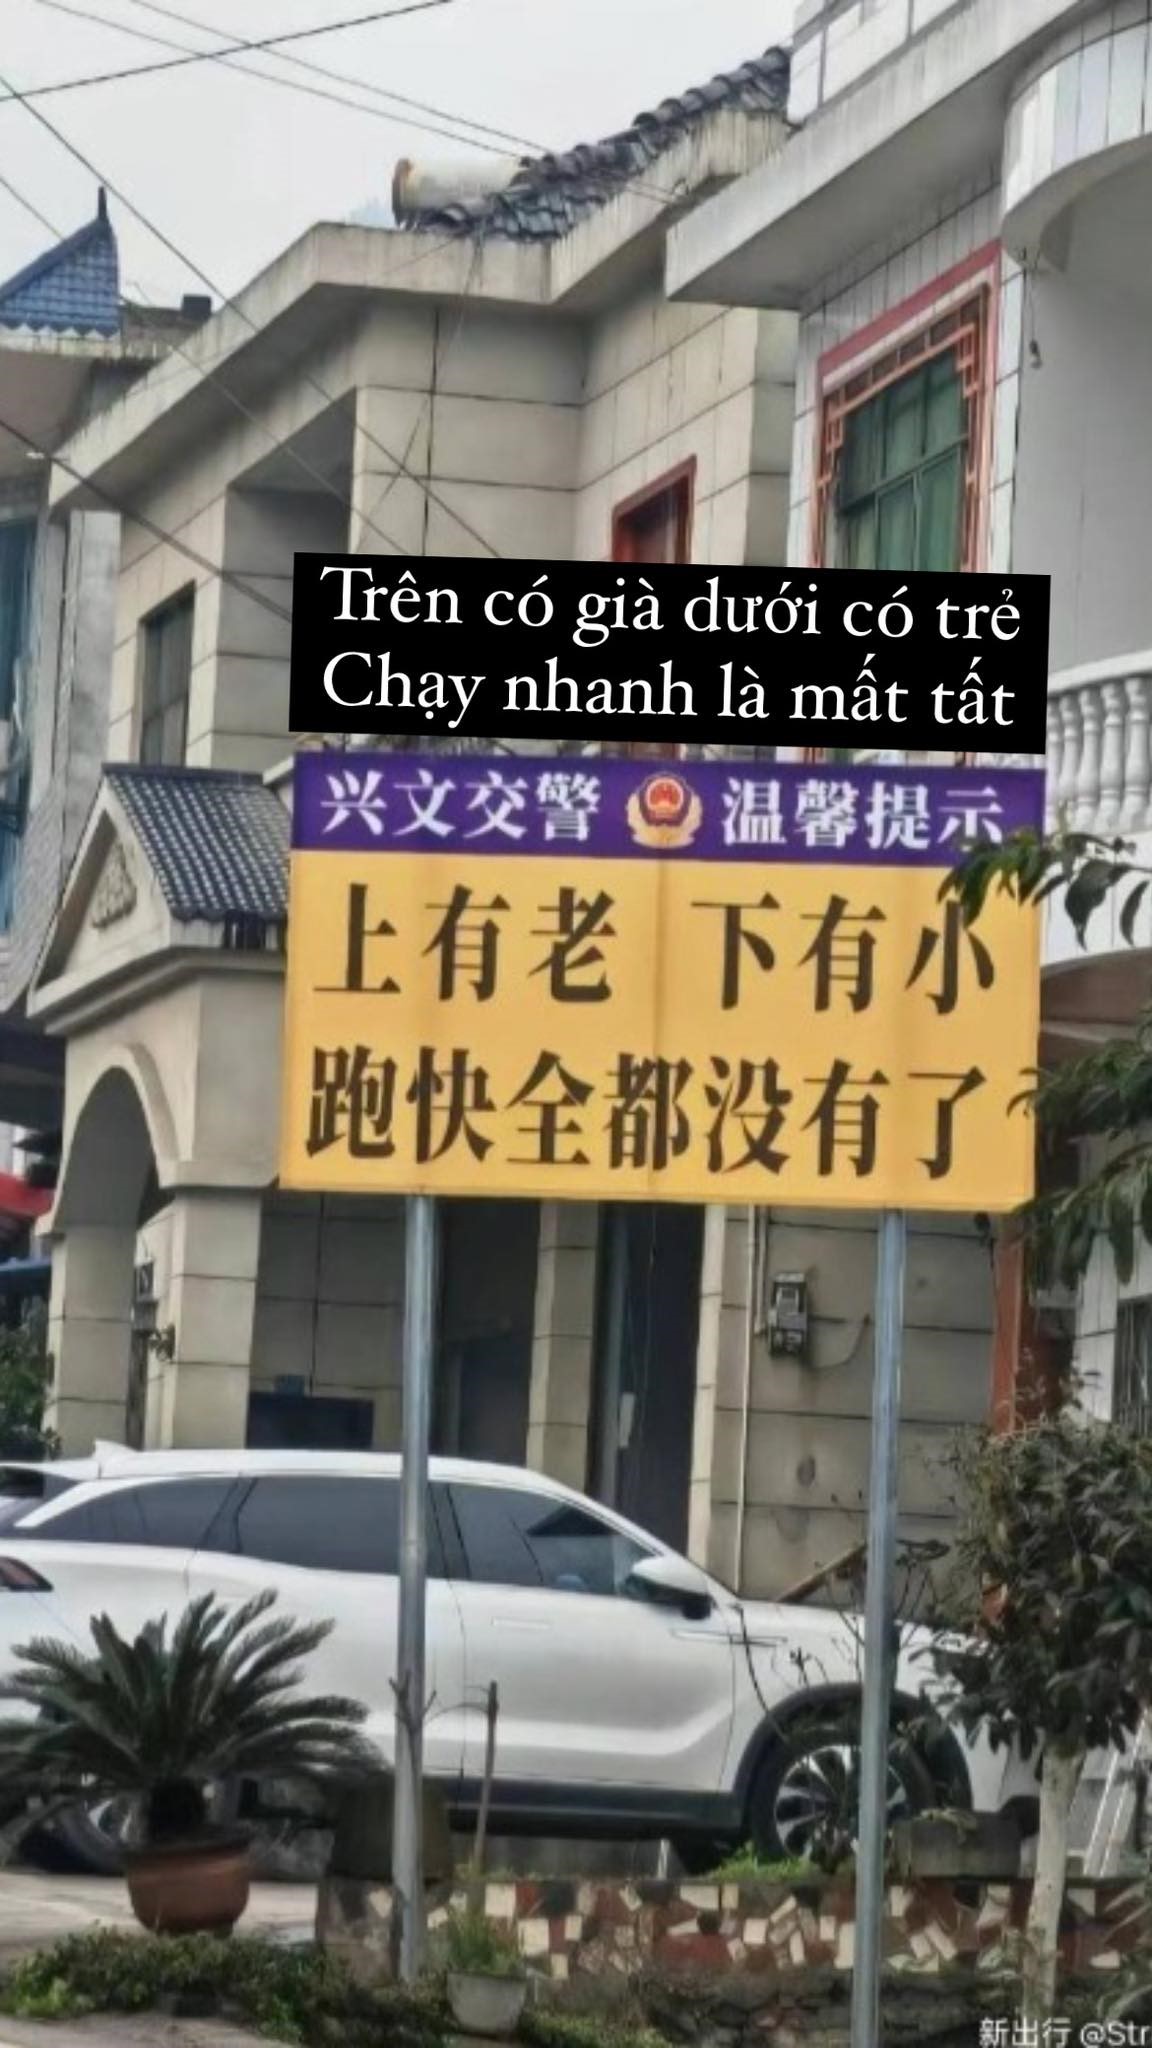 CĐM Việt cười ngả nghiêng biển báo giao thông ở Trung Quốc: 